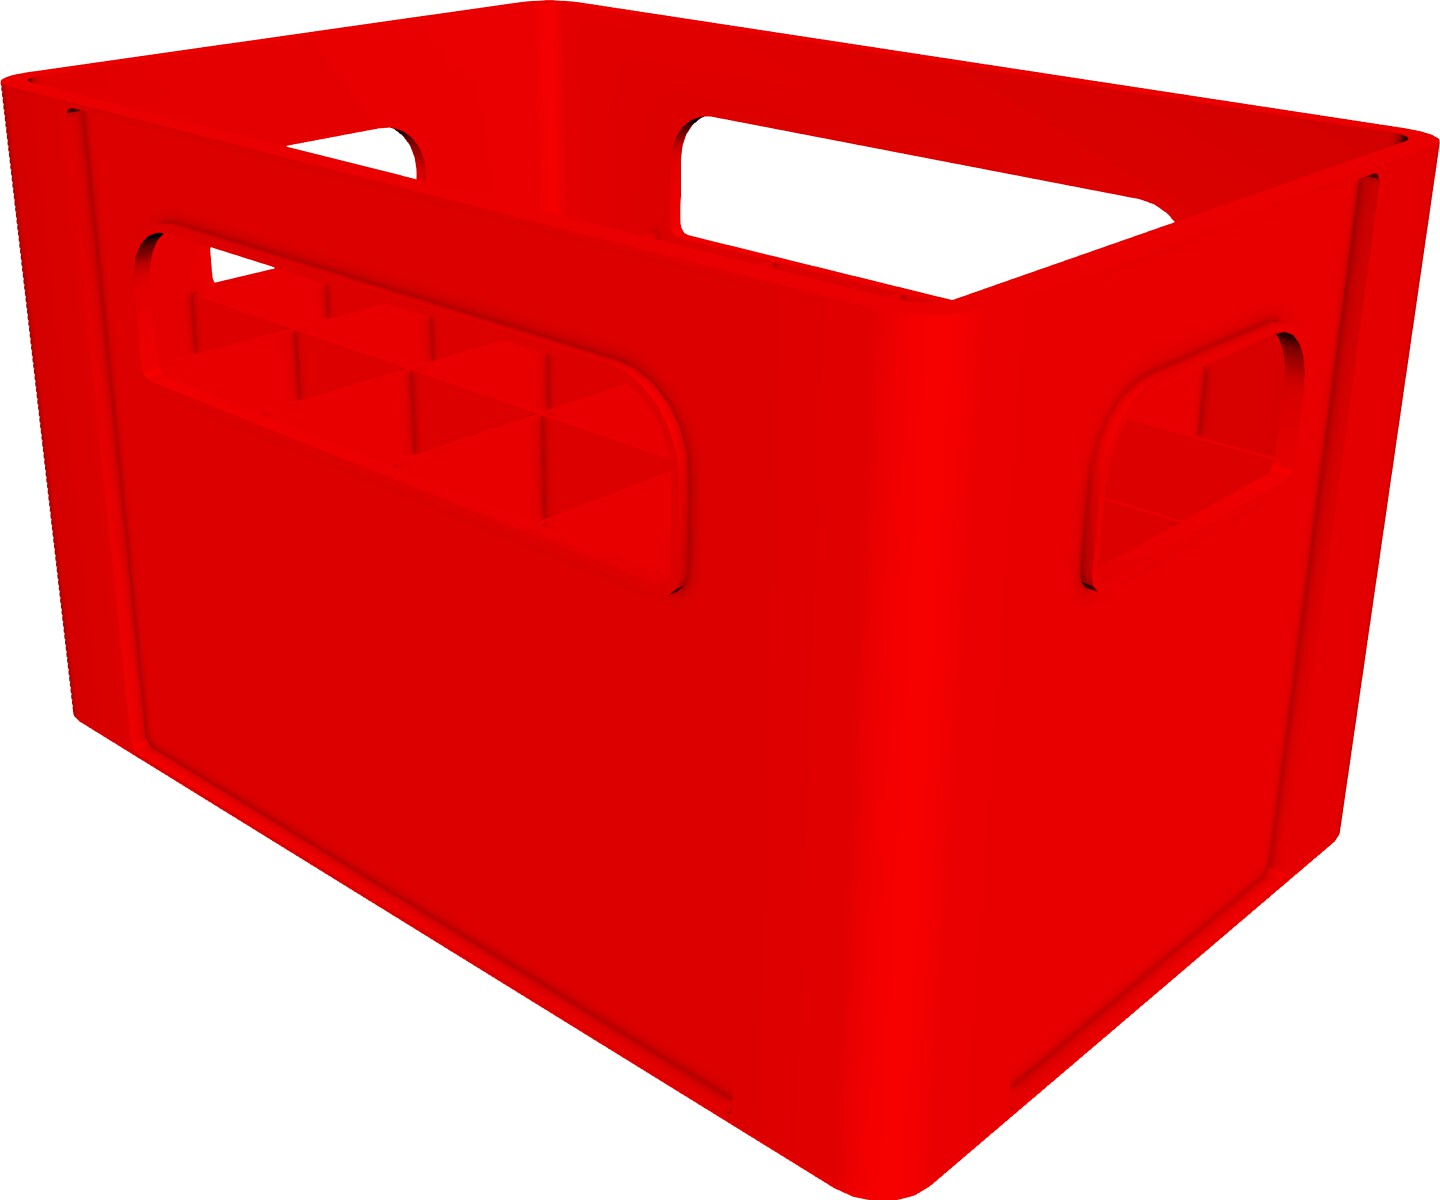 Crate 3D CAD Model